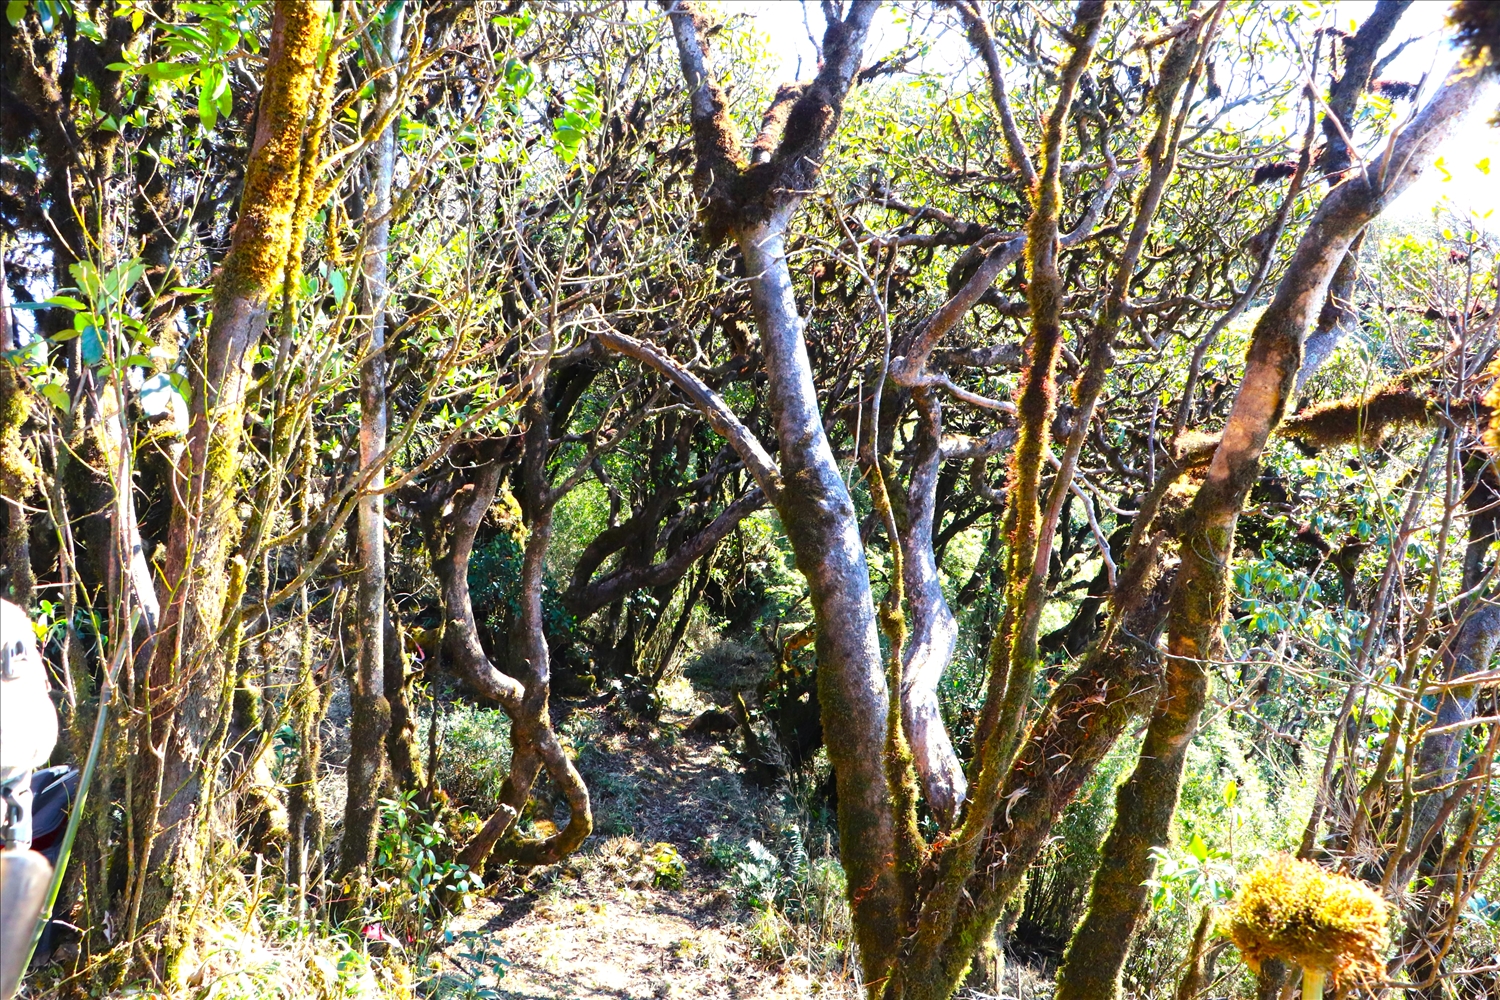 Để chinh phục được đỉnh Tả Liên Sơn, không còn cách nào khác, du khác phải lách qua những con đường mòn, xung quanh được bao bọc bởi những lớp cây rêu phủ.